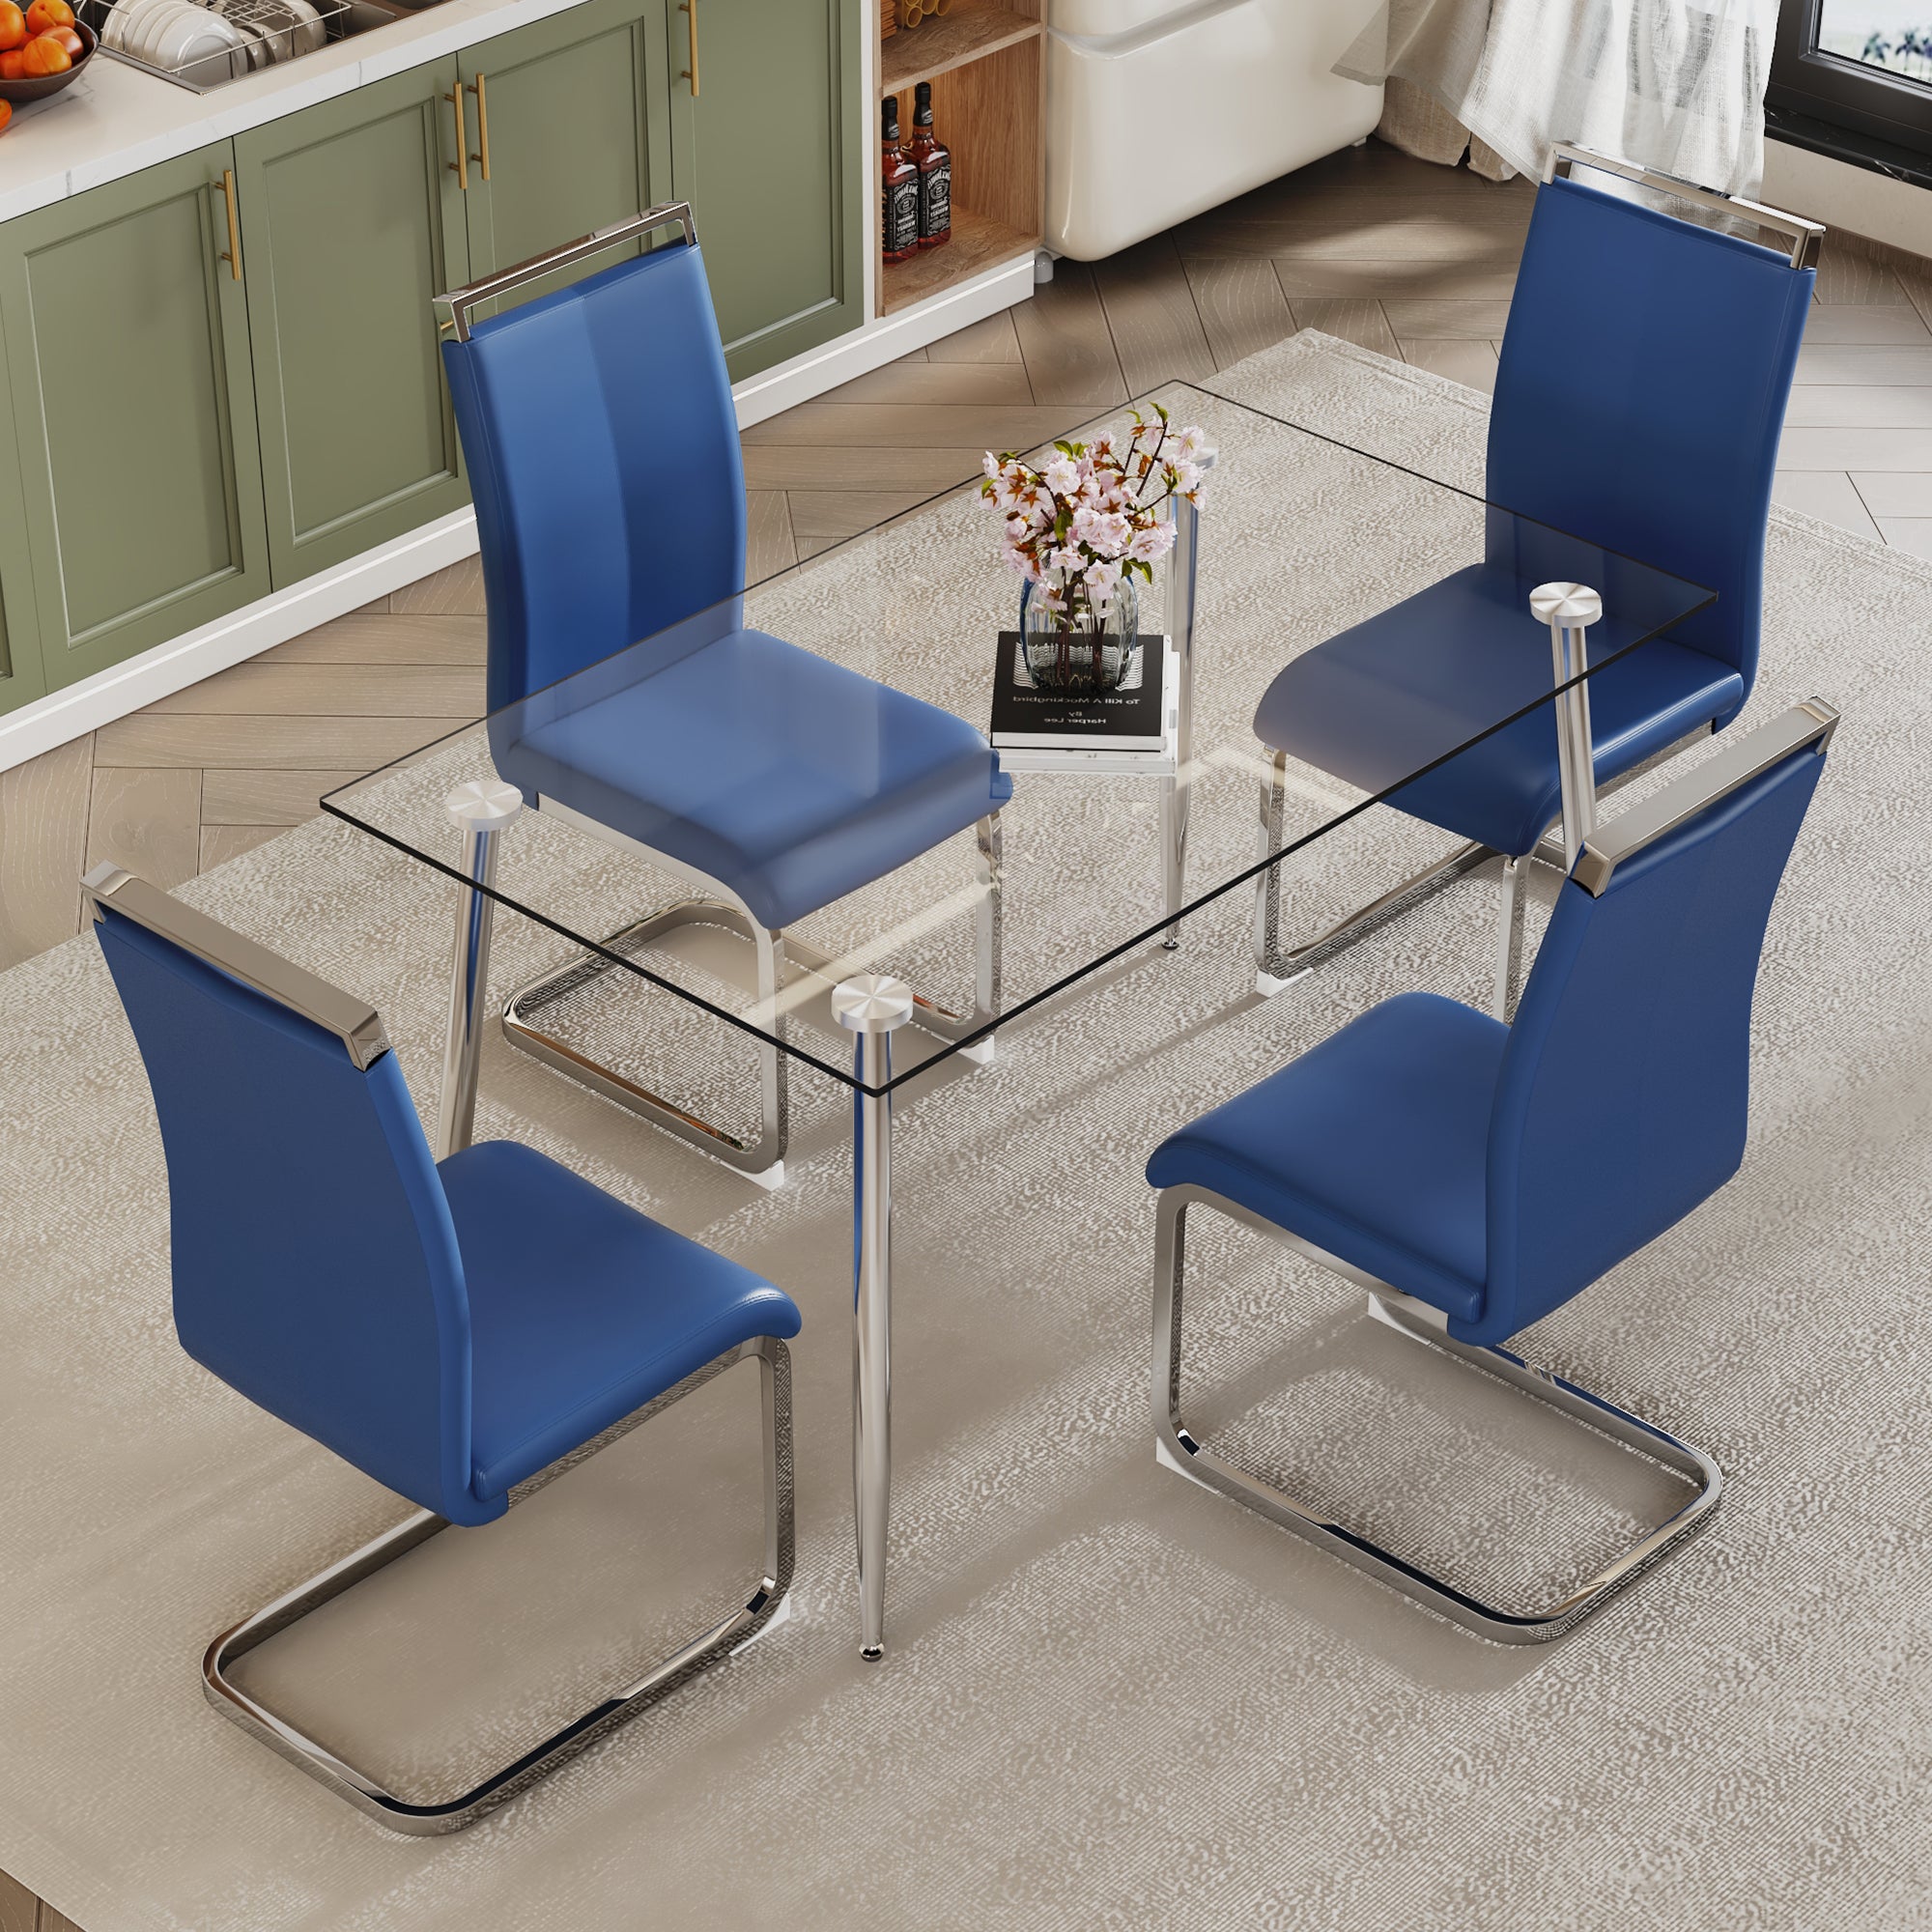 Juego de muebles de cocina y mesa de comedor de vidrio con 4 sillas de comedor azules